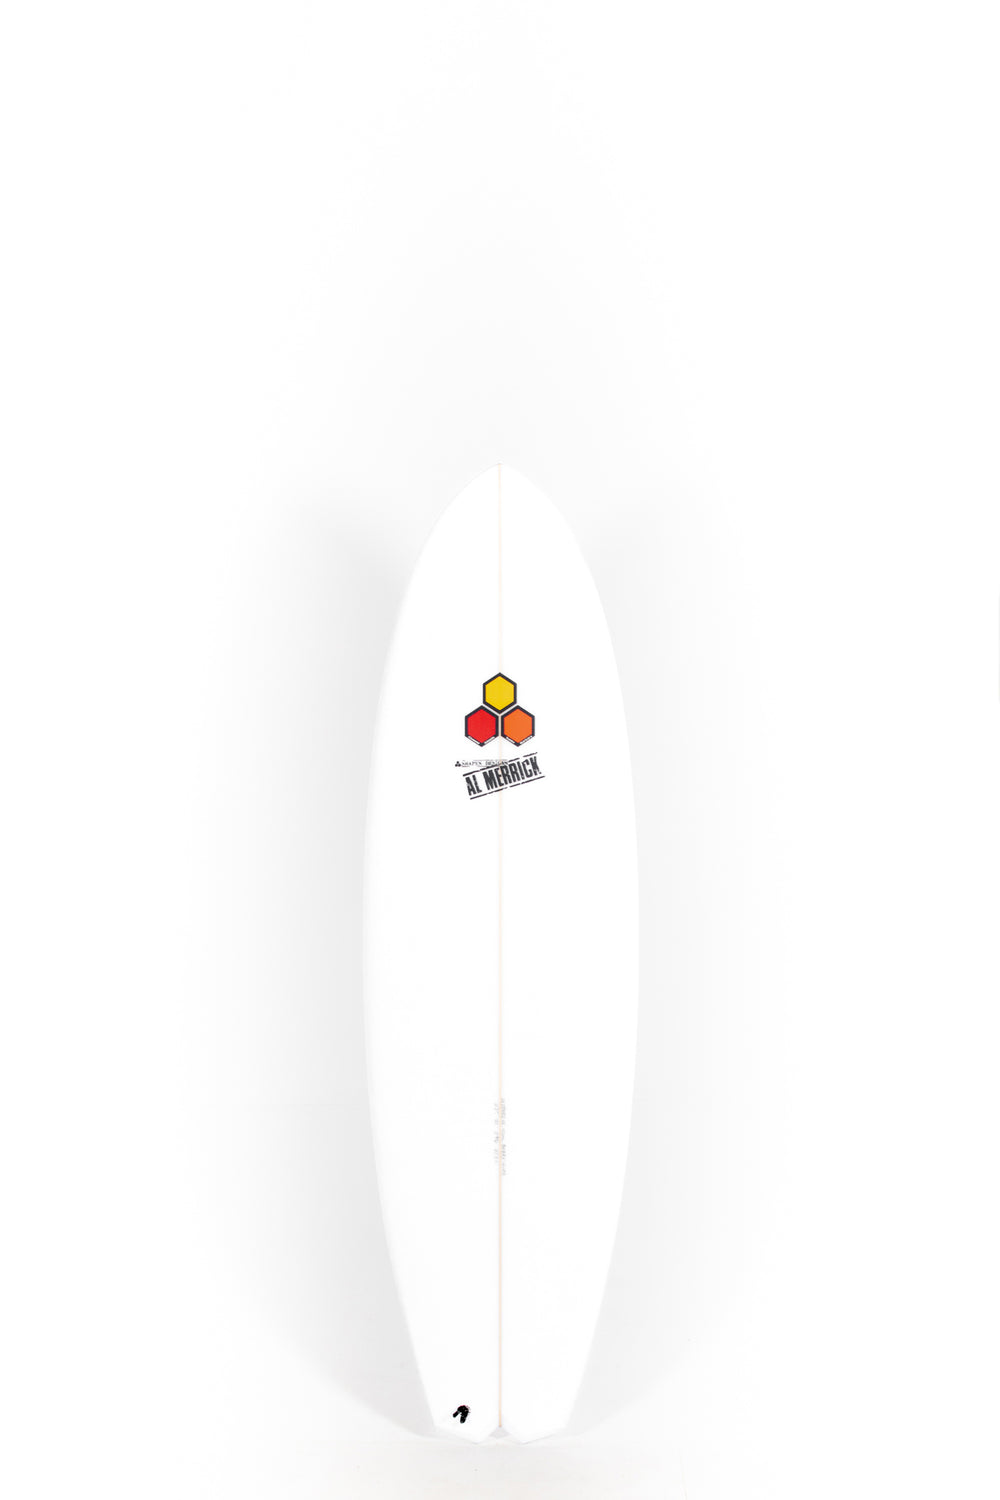 Pukas Surf Shop - Channel Islands - BOBBY QUAD - 6'2